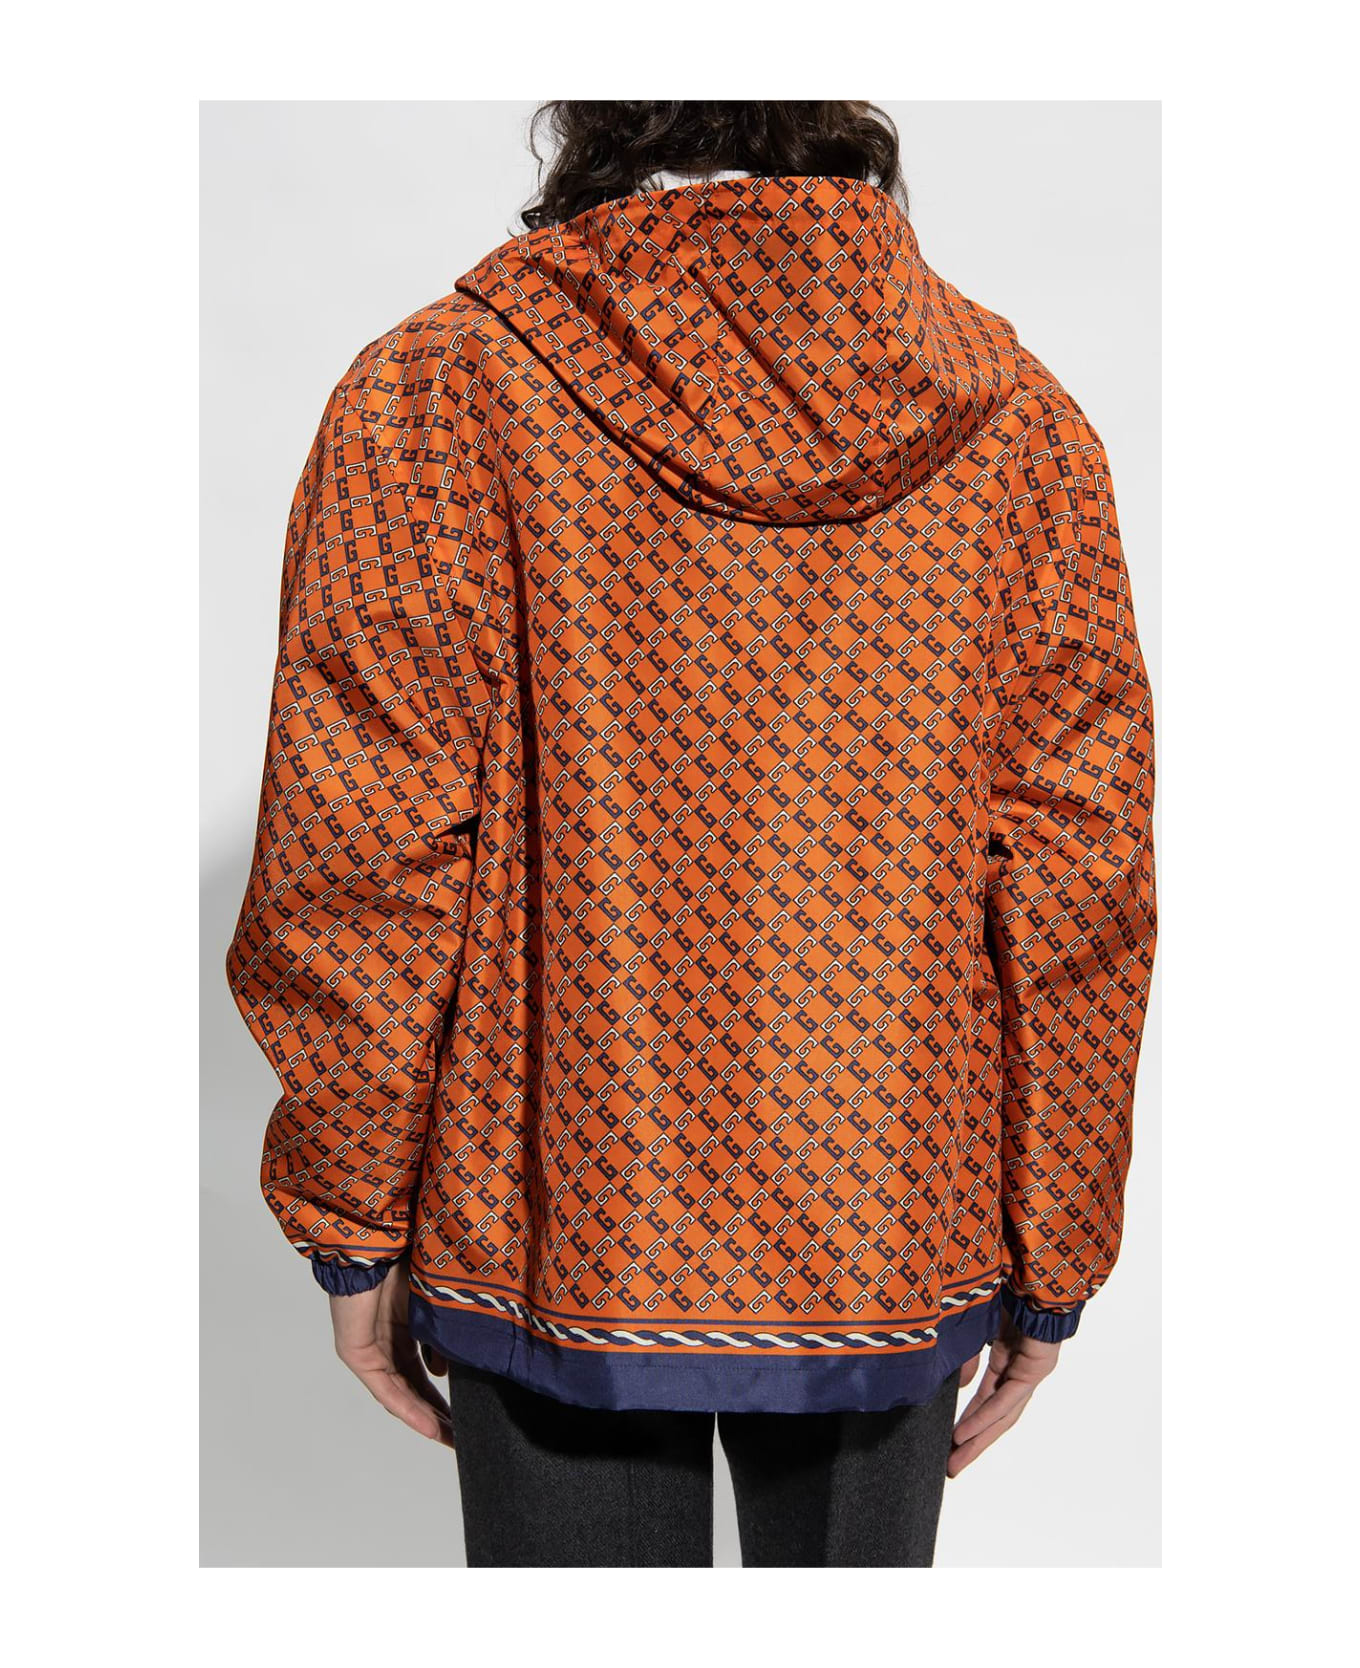 Gucci Patterned Hooded Jacket - Orange